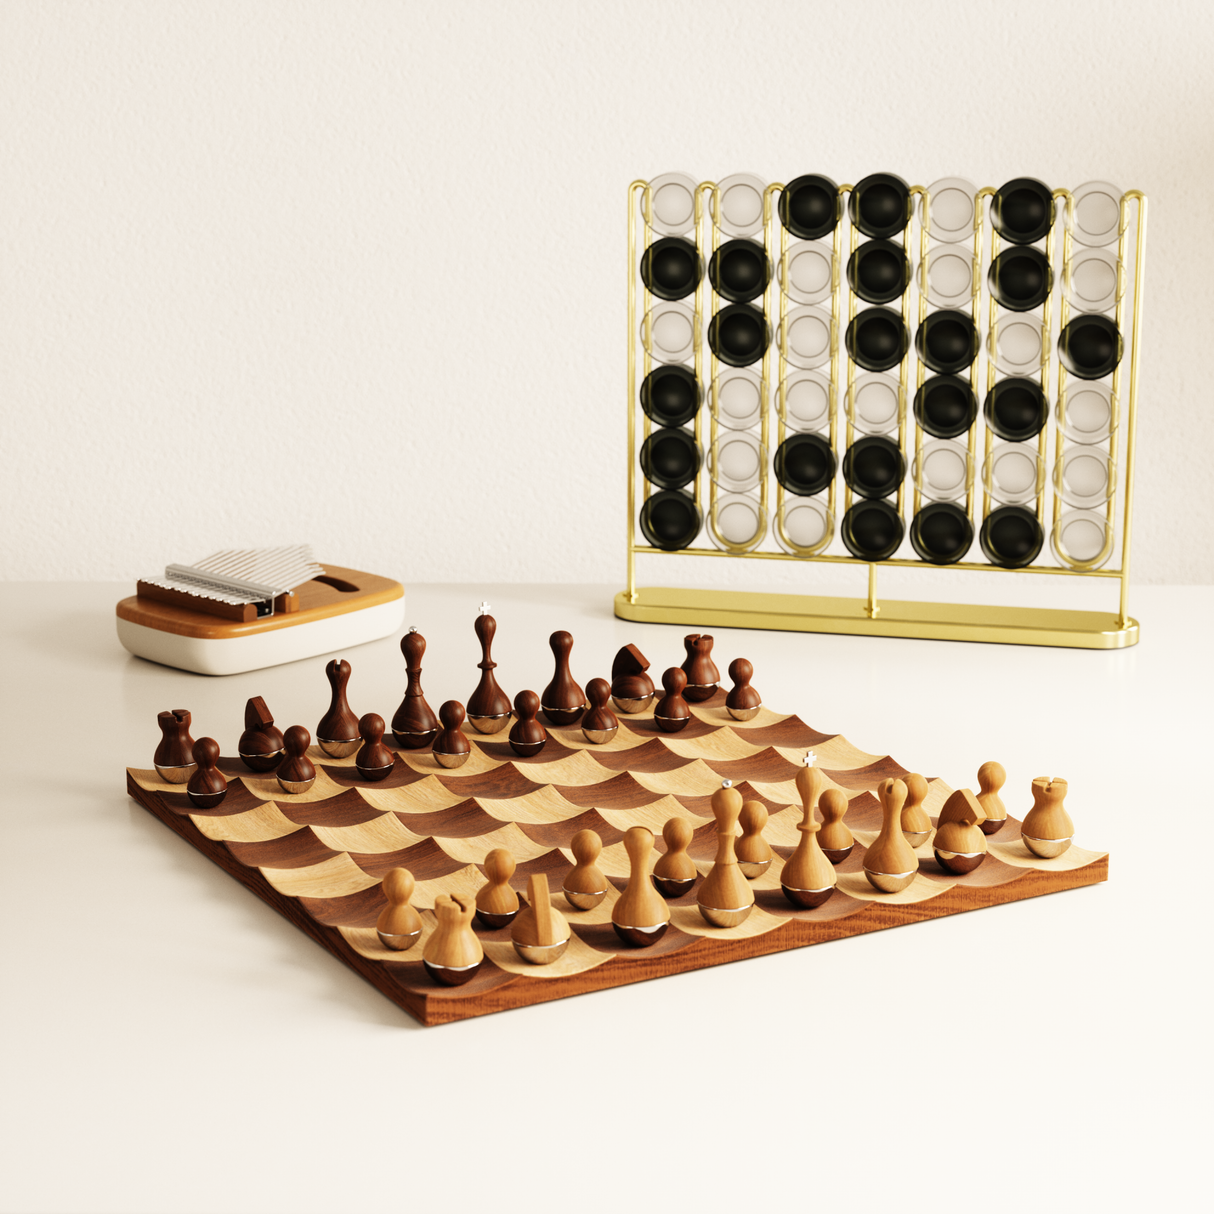 Shop for Unique Chess Sets